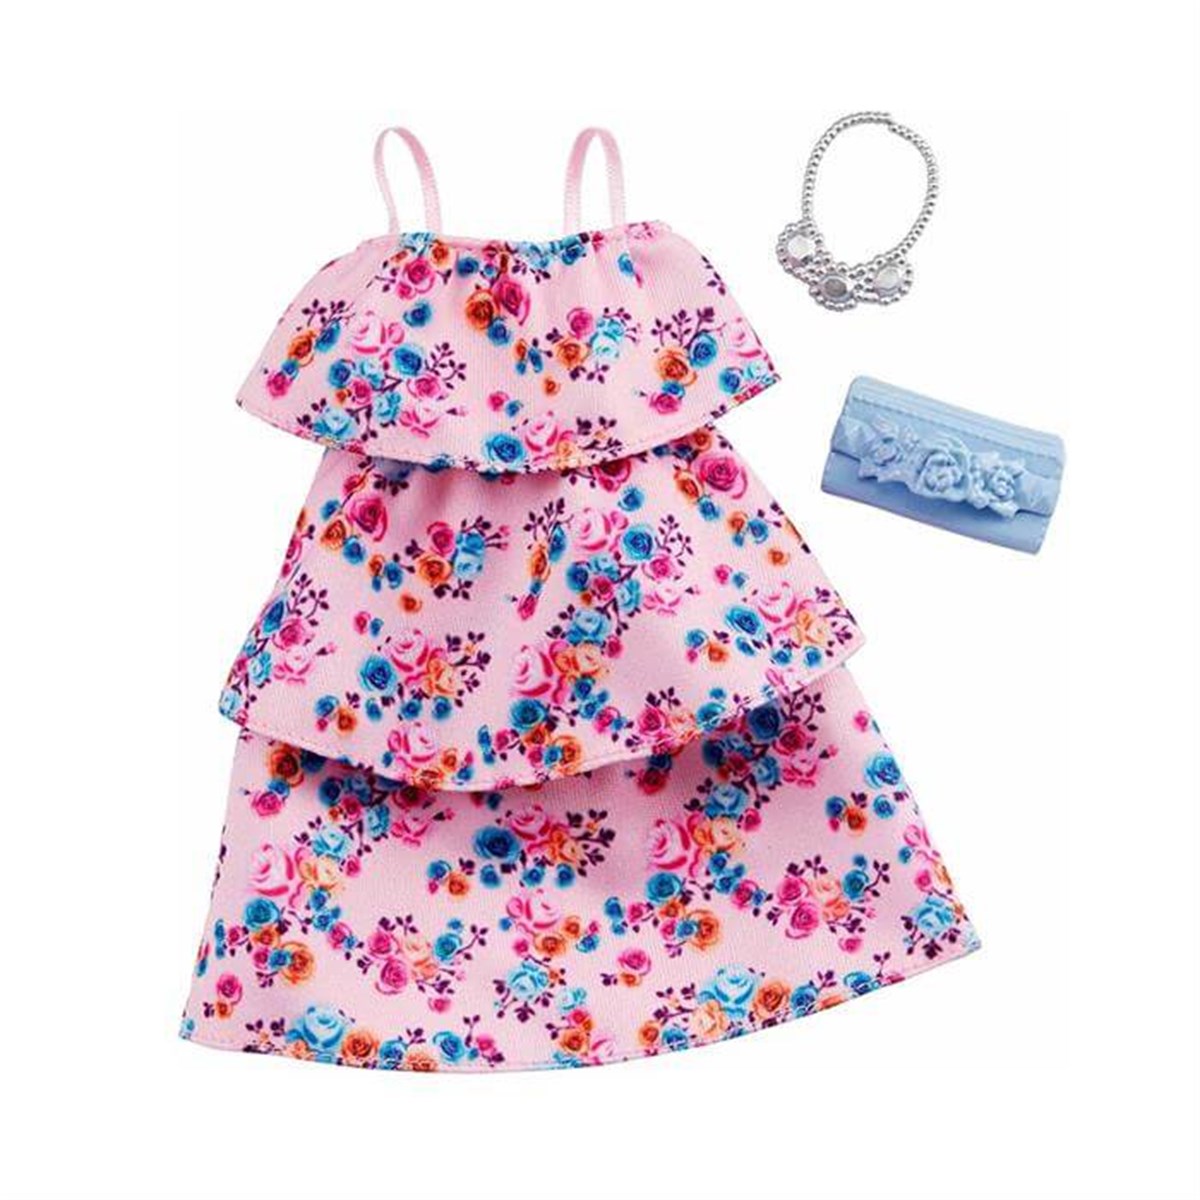 Barbienin Son Moda Kıyafetleri - Renkli Çiçekli Elbise en uygun fiyatlarla  Dobişko Oyuncak'ta!